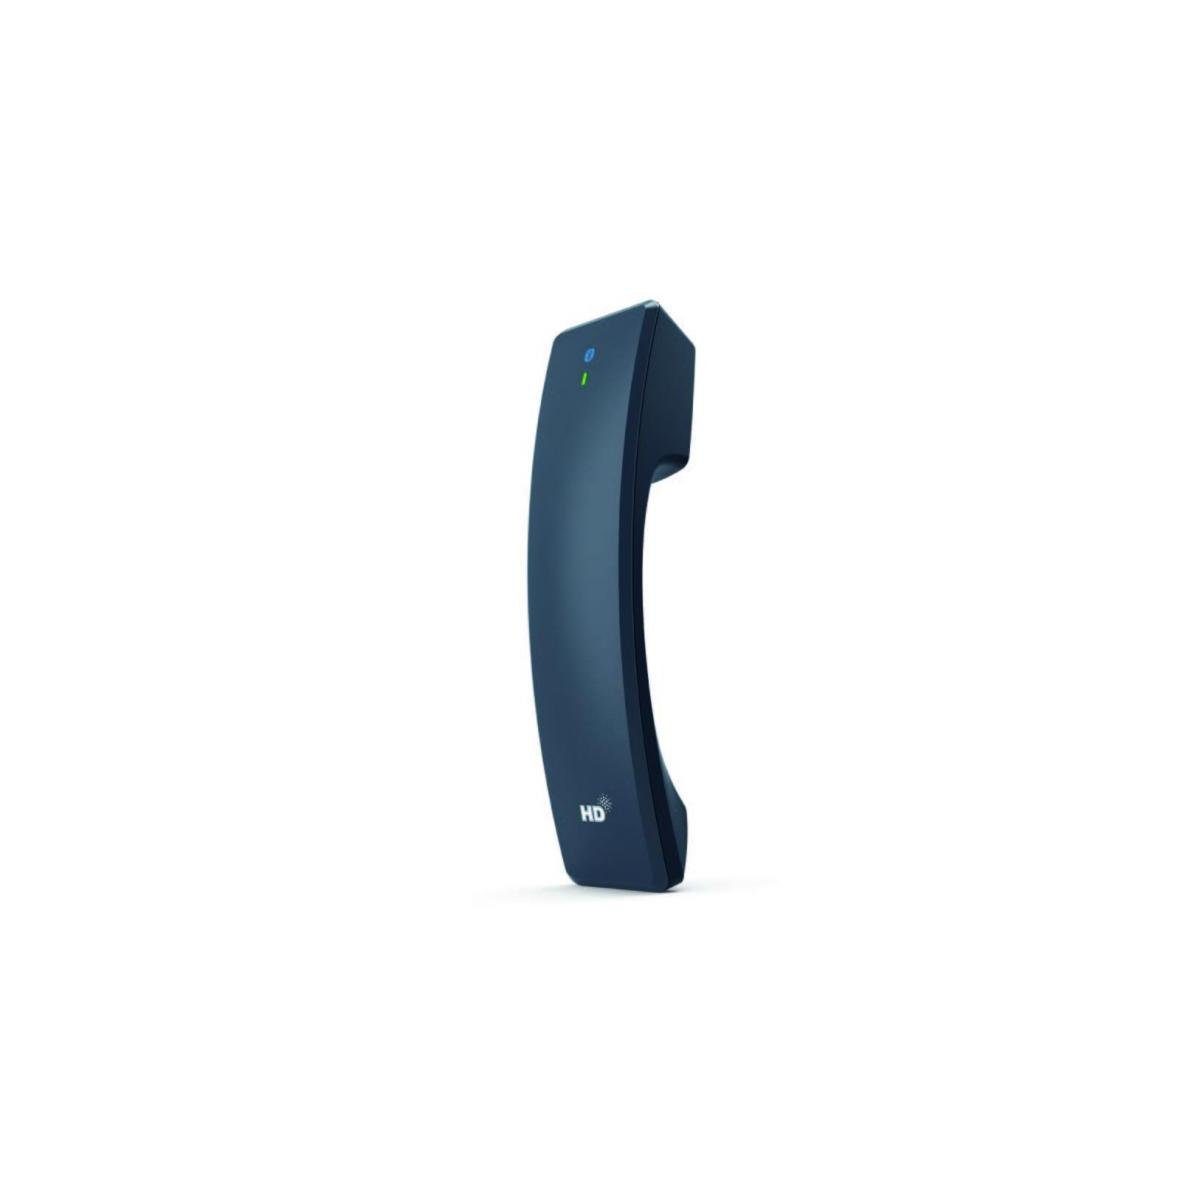 Yealink BTH58 - Drahtloses DECT-Telefon Bluetooth-Mobilteil